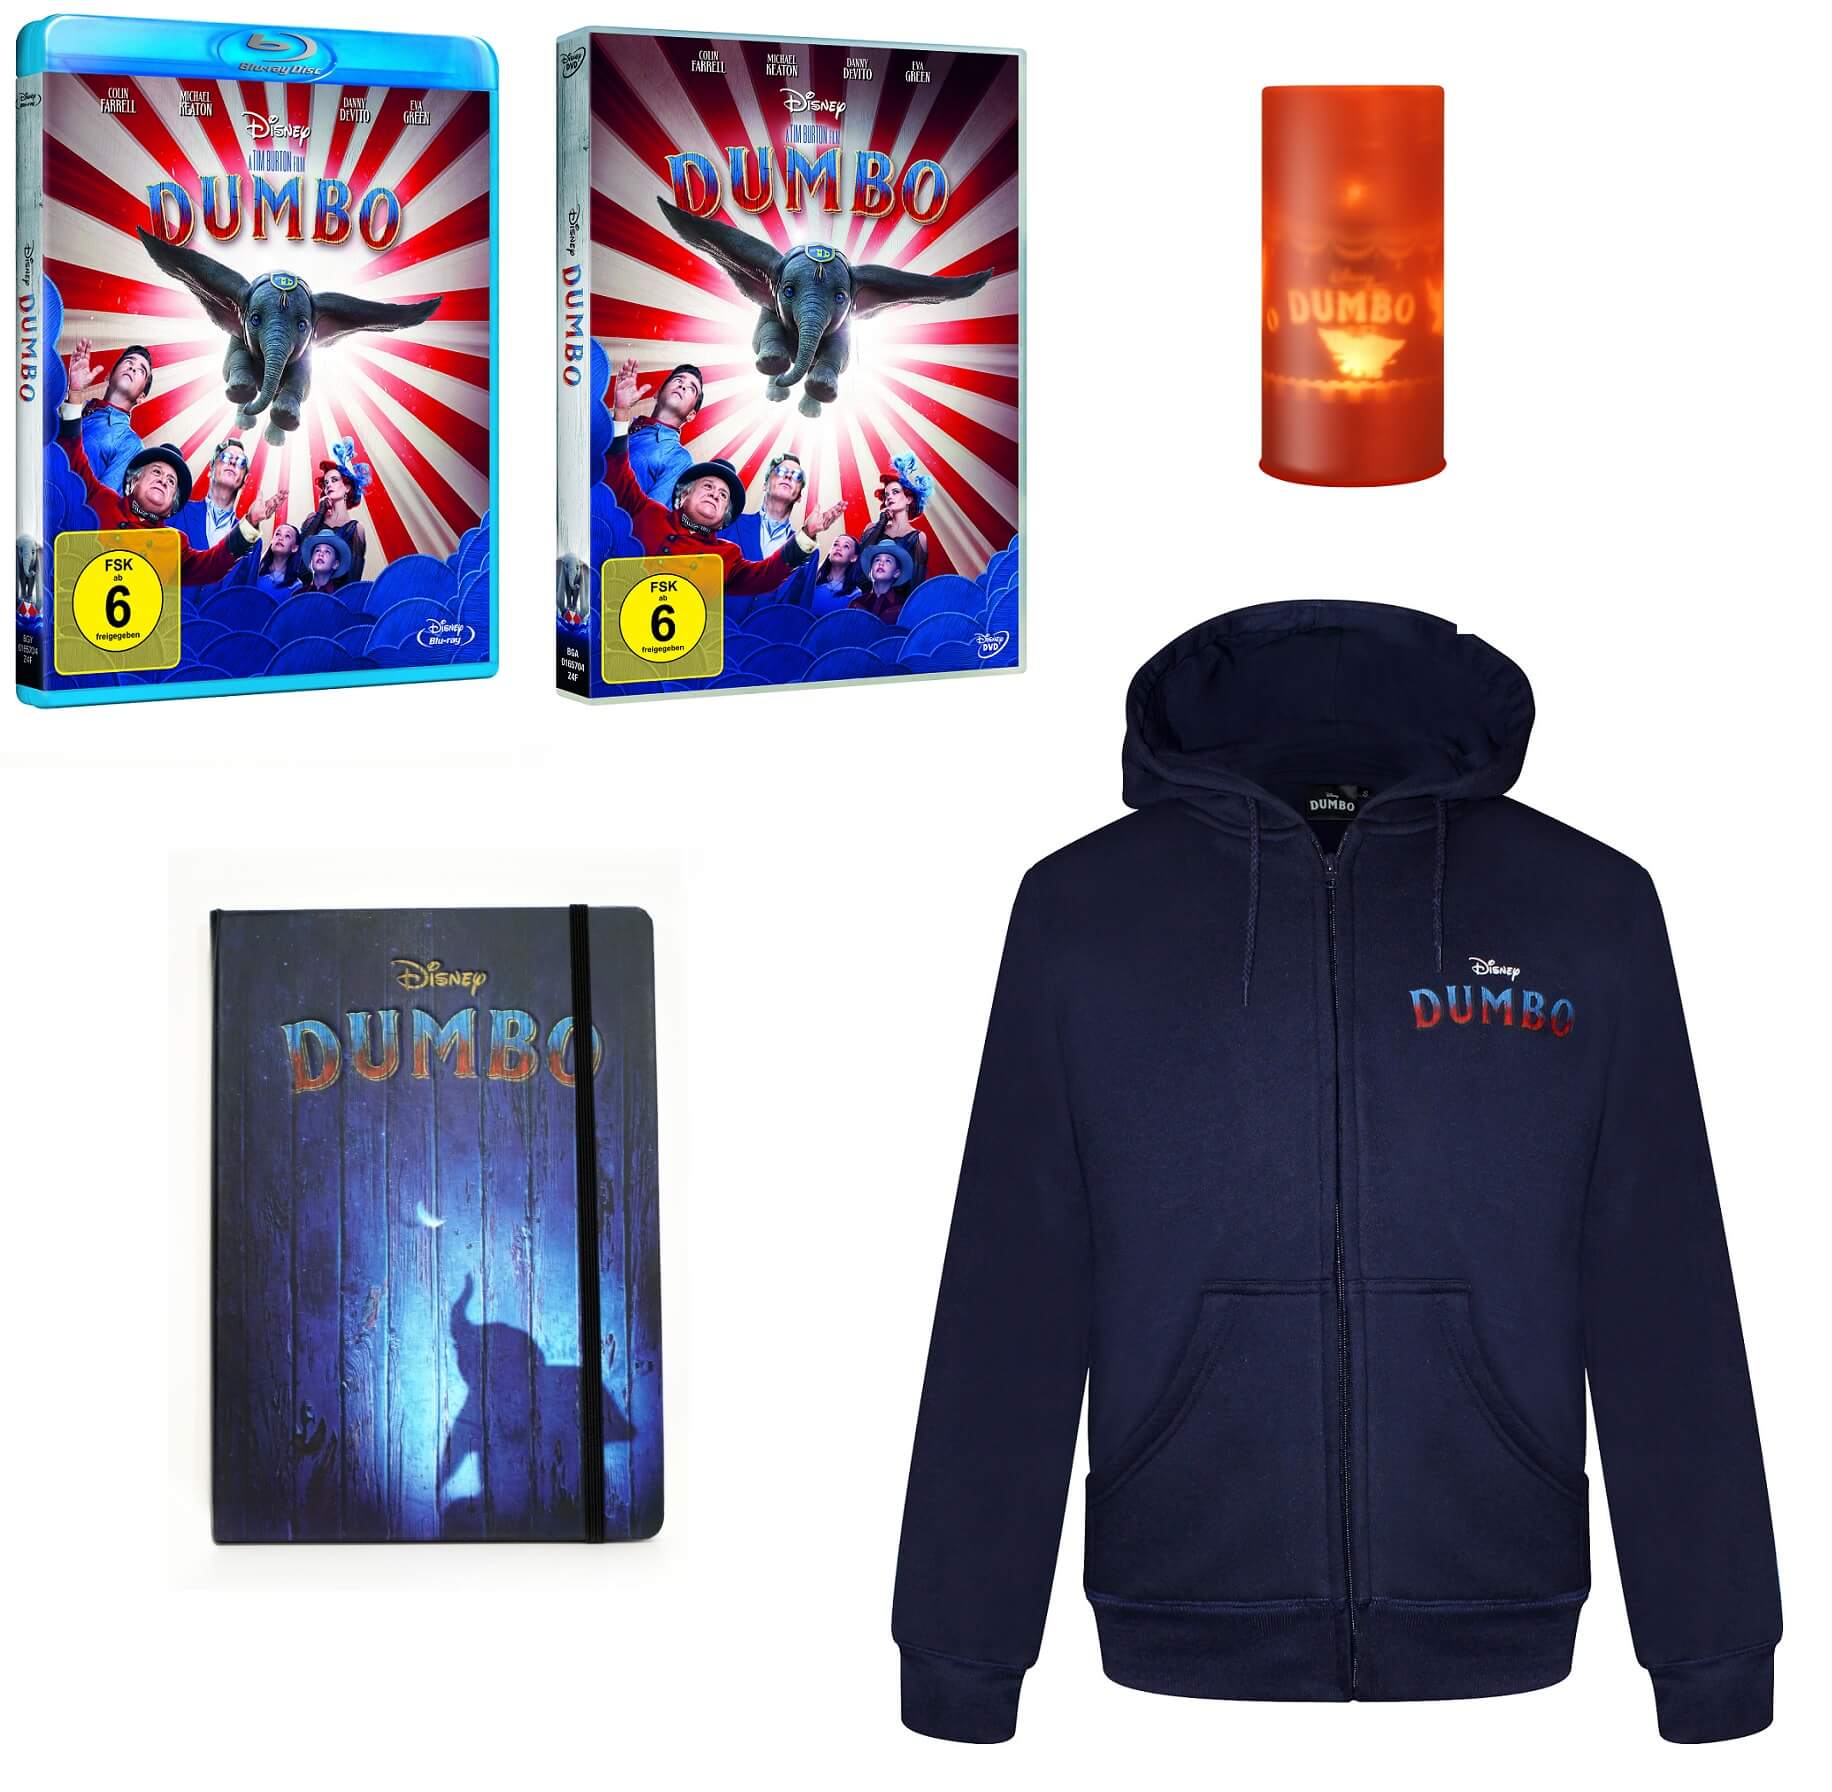 Dumbo Gewinnspiel Blu-ray DVD 